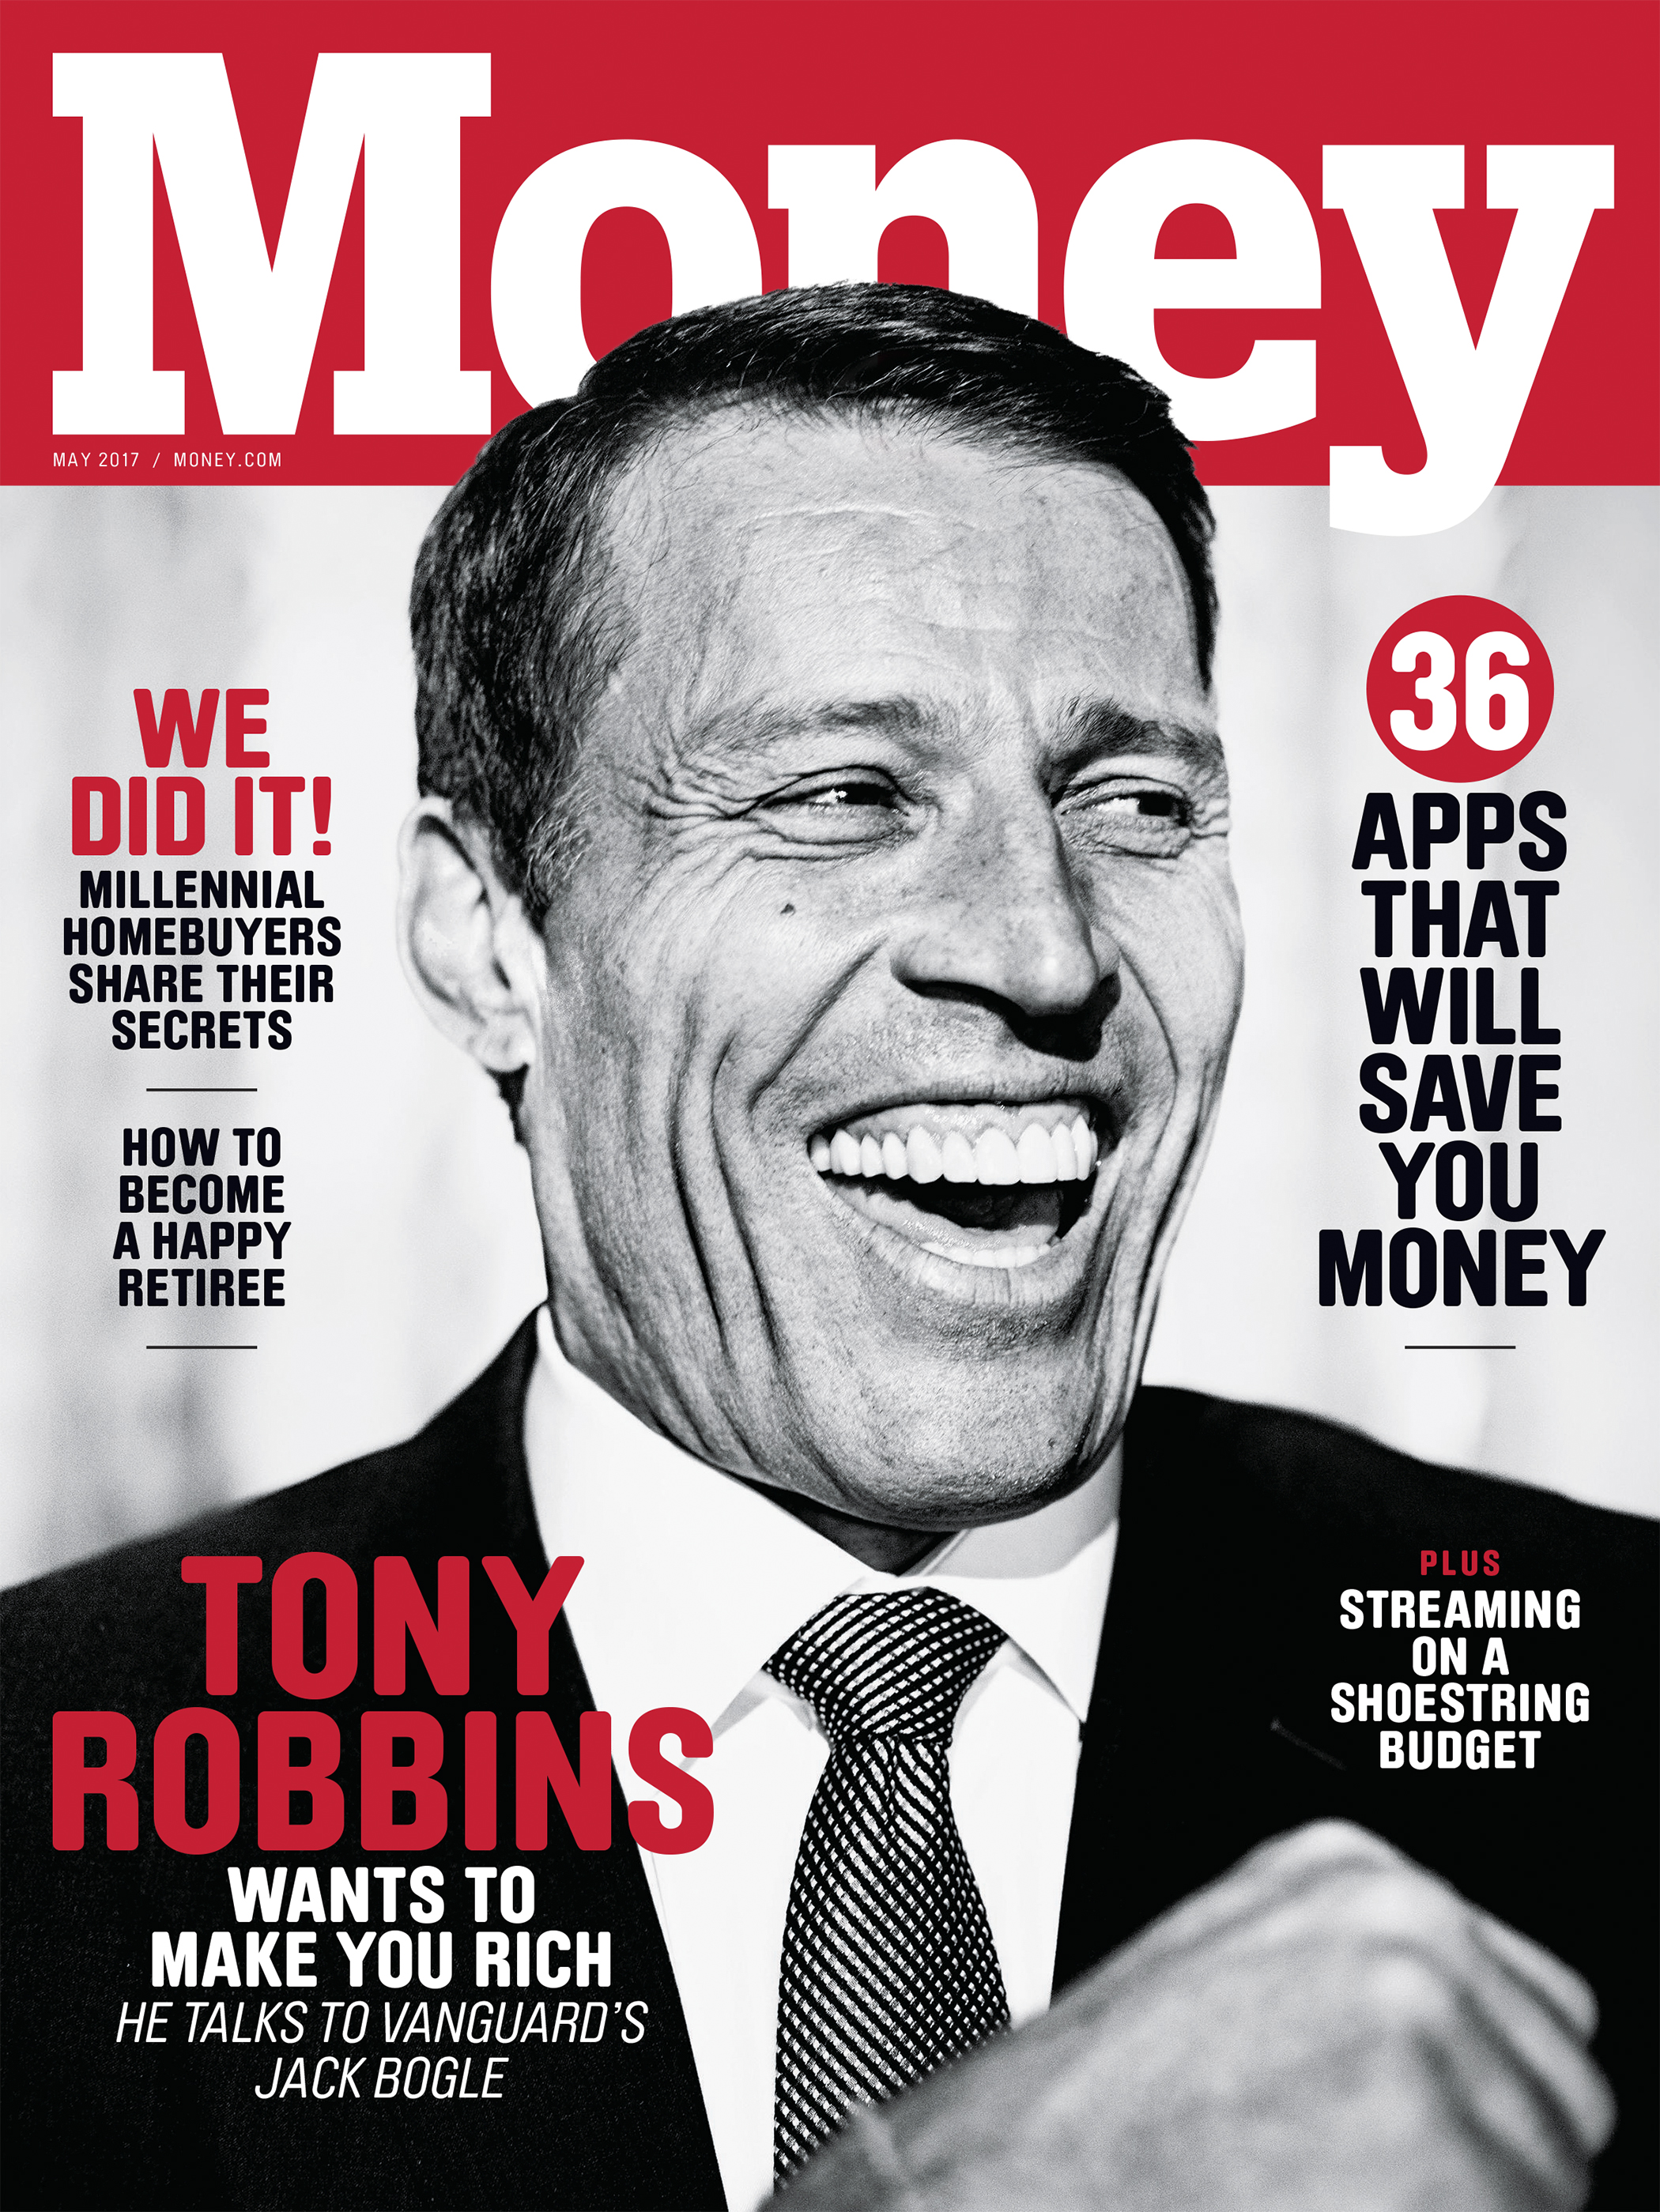 Money magazine May 2017 cover with Tony Robbins